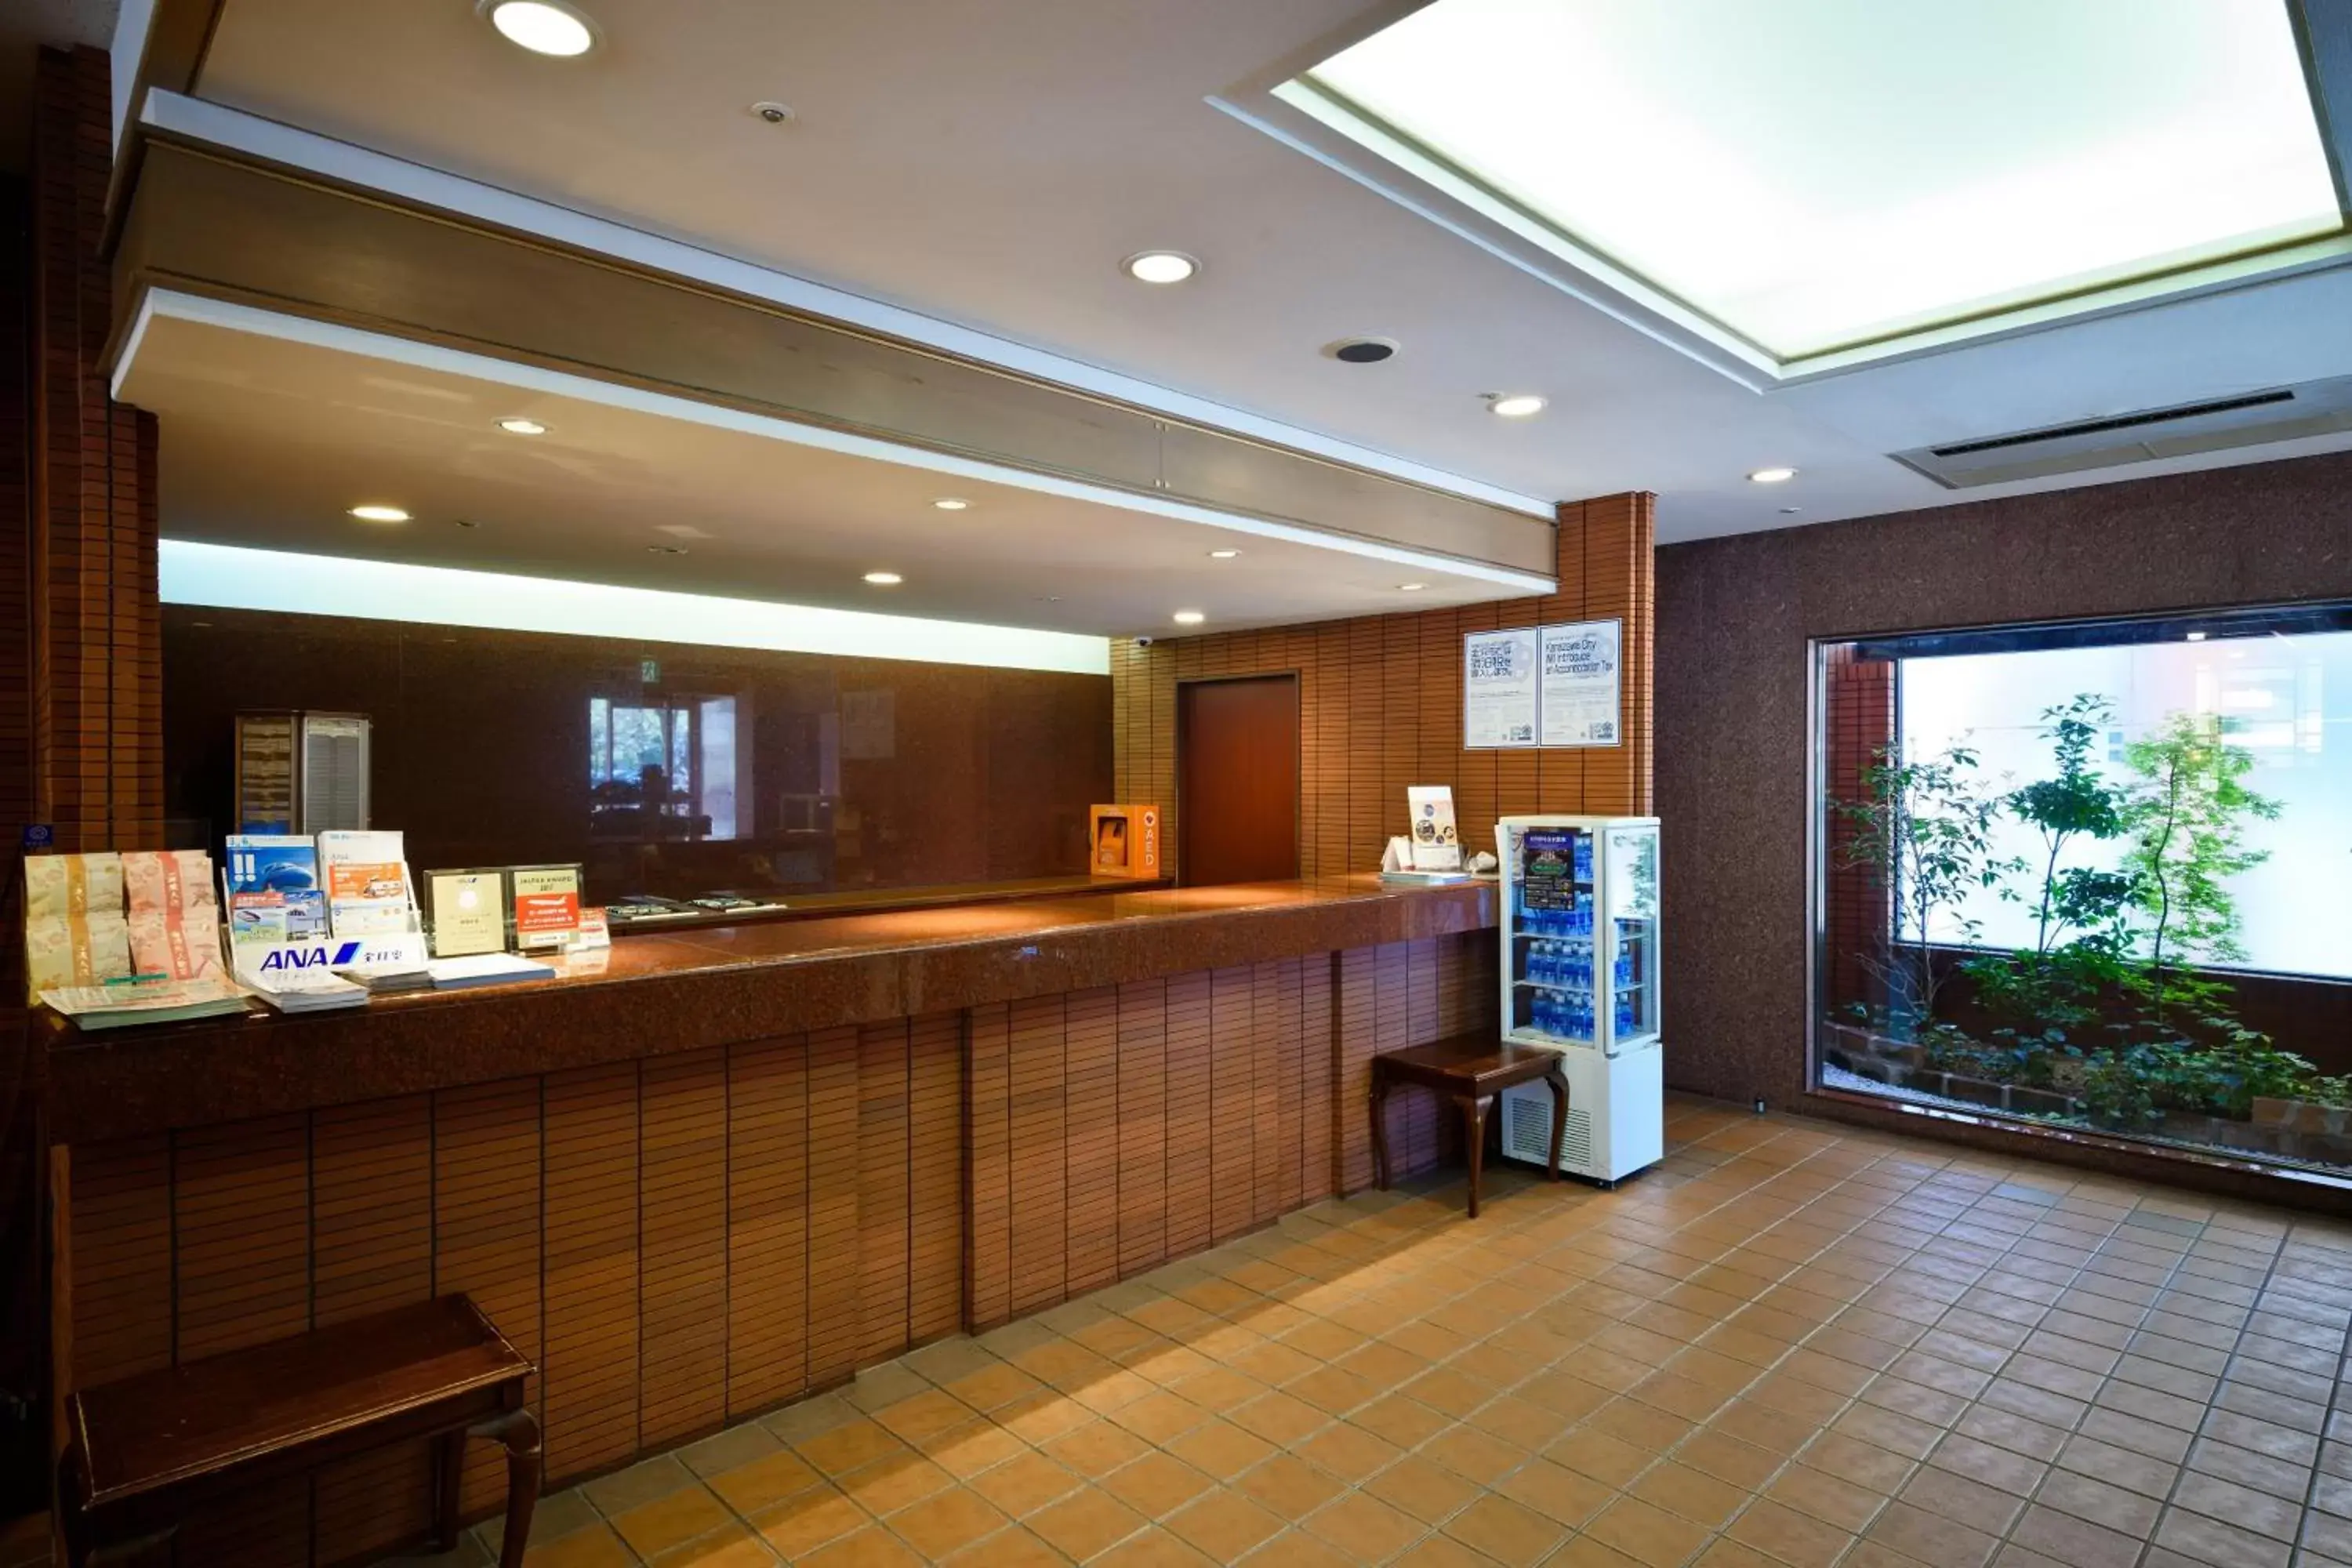 Lobby or reception in Garden Hotel Kanazawa